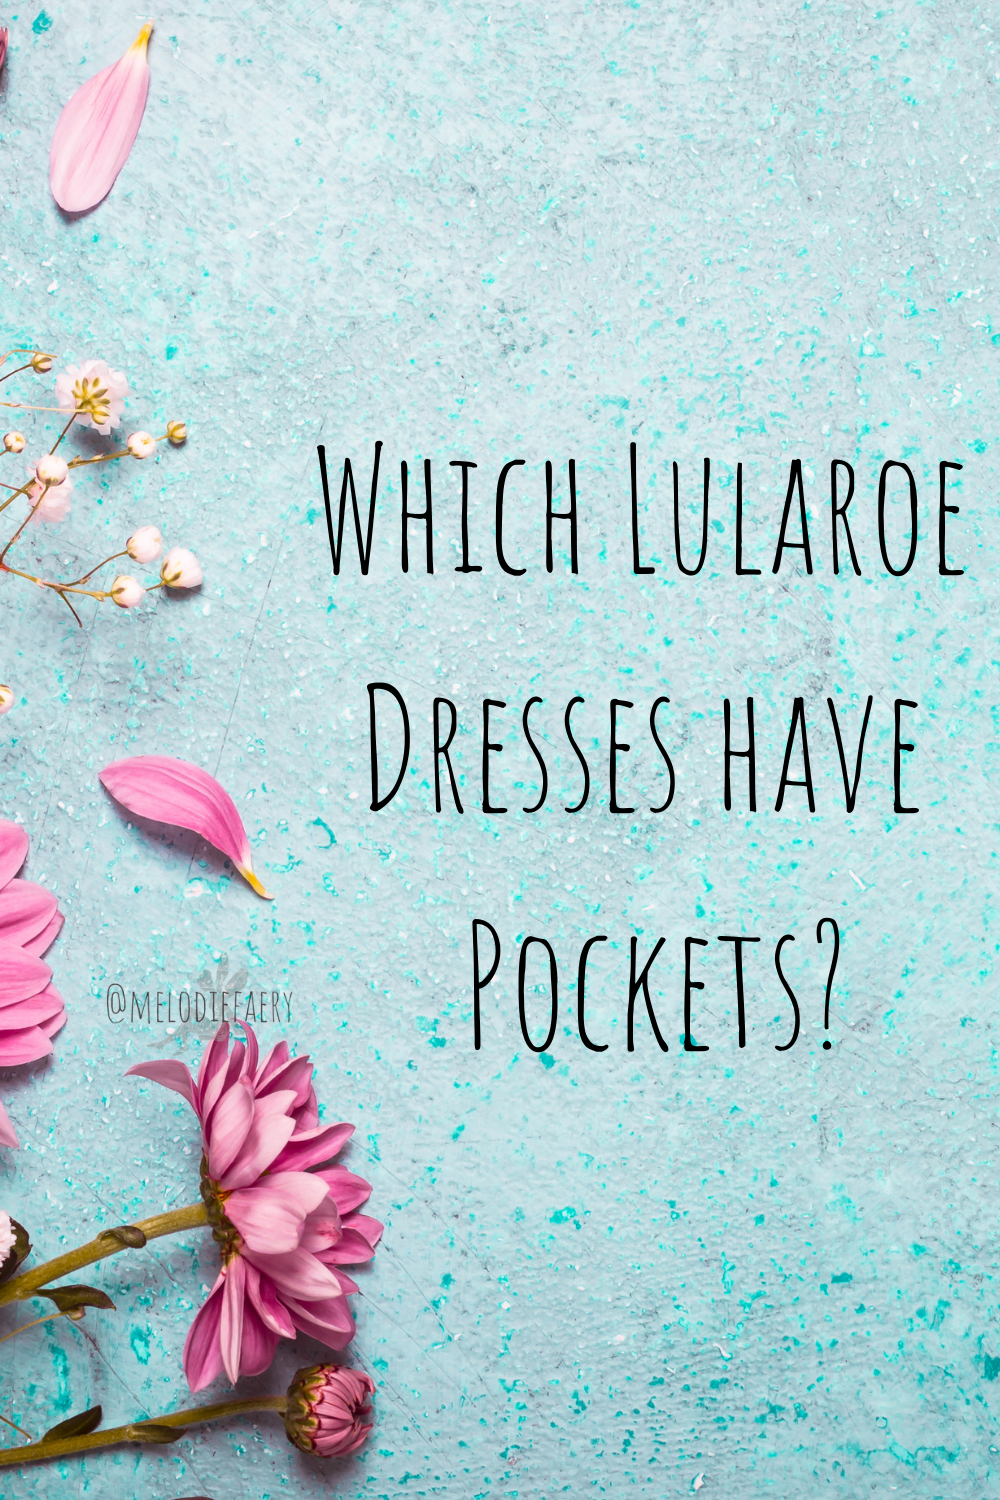 LuLaRoe Carly Size Comparison  Lula roe outfits, Lularoe styling, Lularoe  dresses